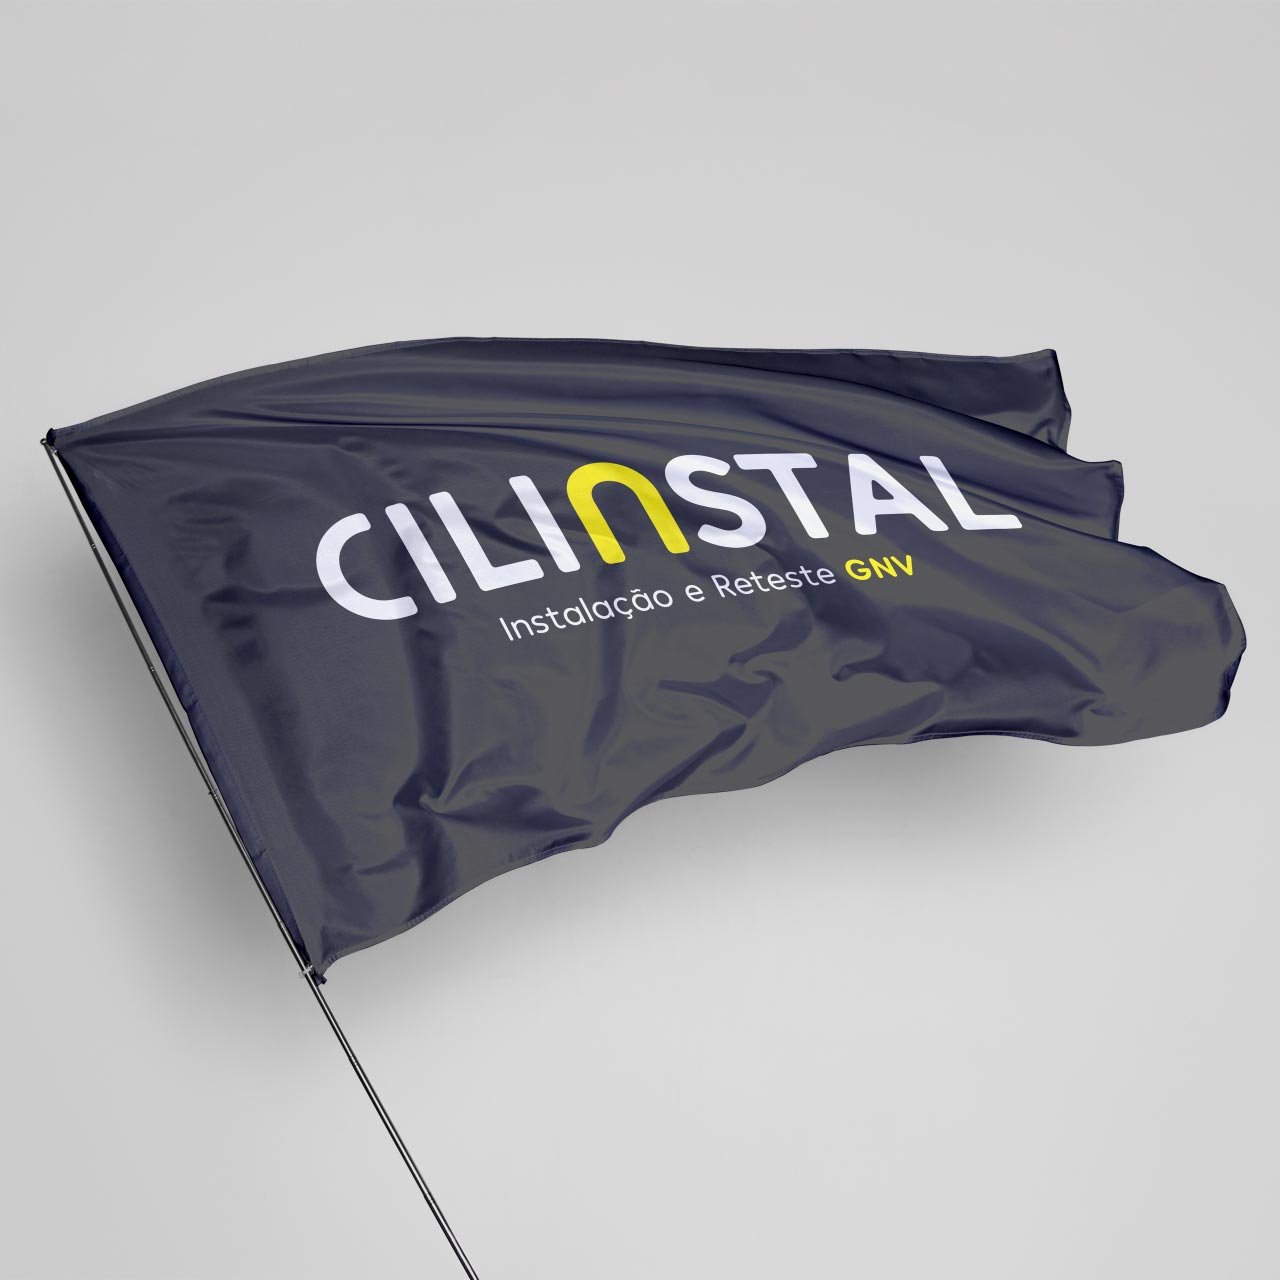 Cilinstal – Instalação e Reteste GNV - imagem de apresentação